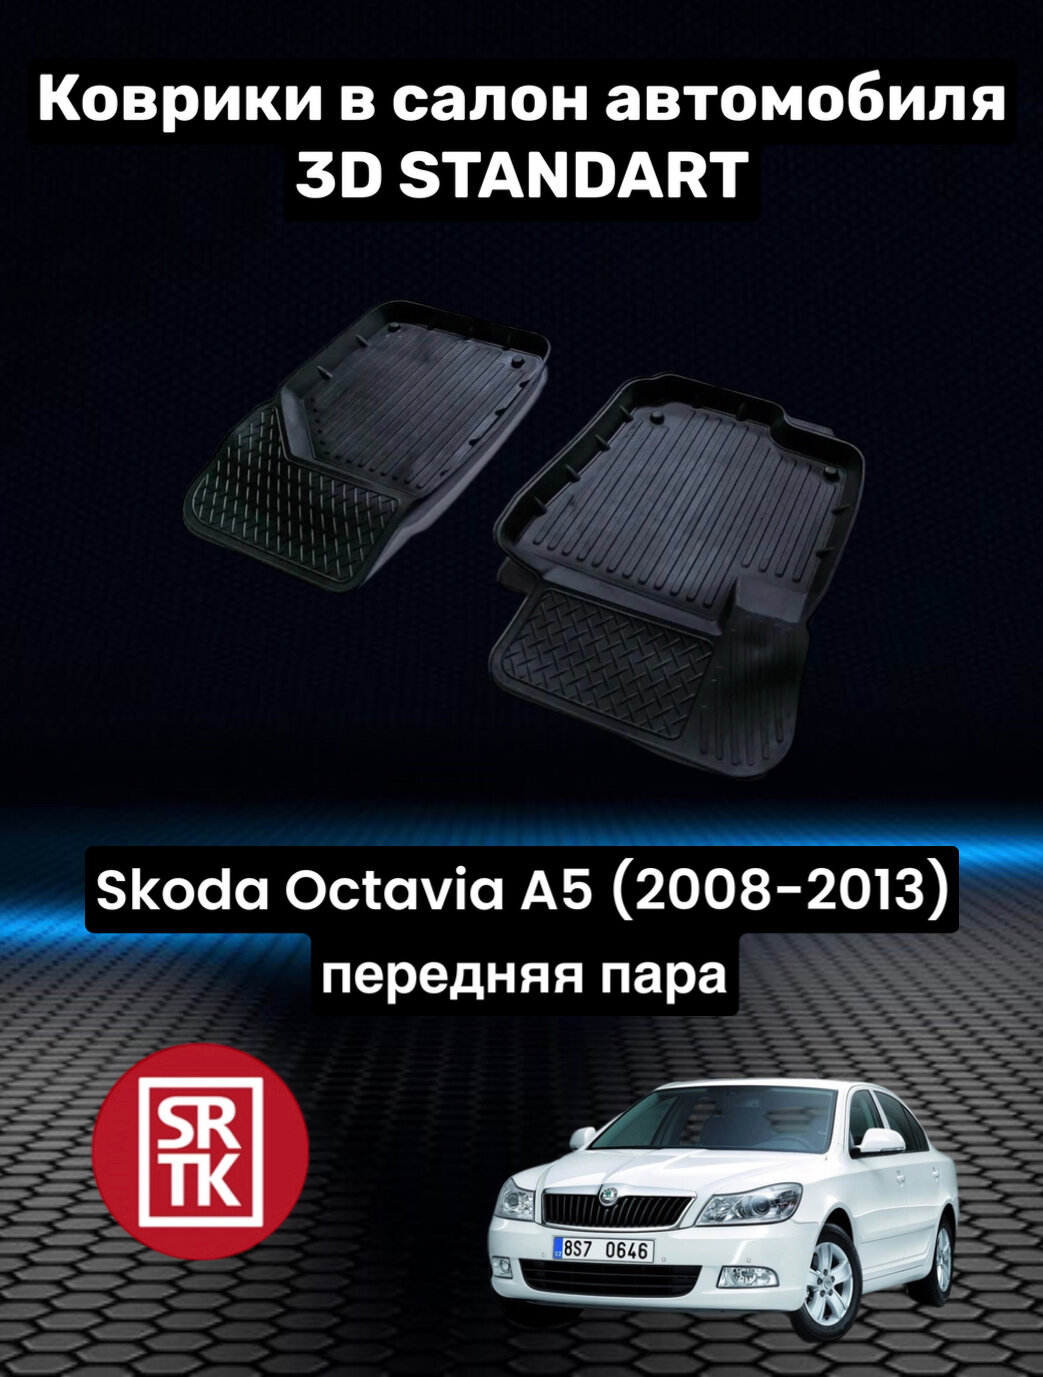 Ковры резиновые в салон для Шкода Октавия А5/Skoda Octavia-A5 (2008-2013) 3D STANDART SRTK (Саранск) передняя пара в салон